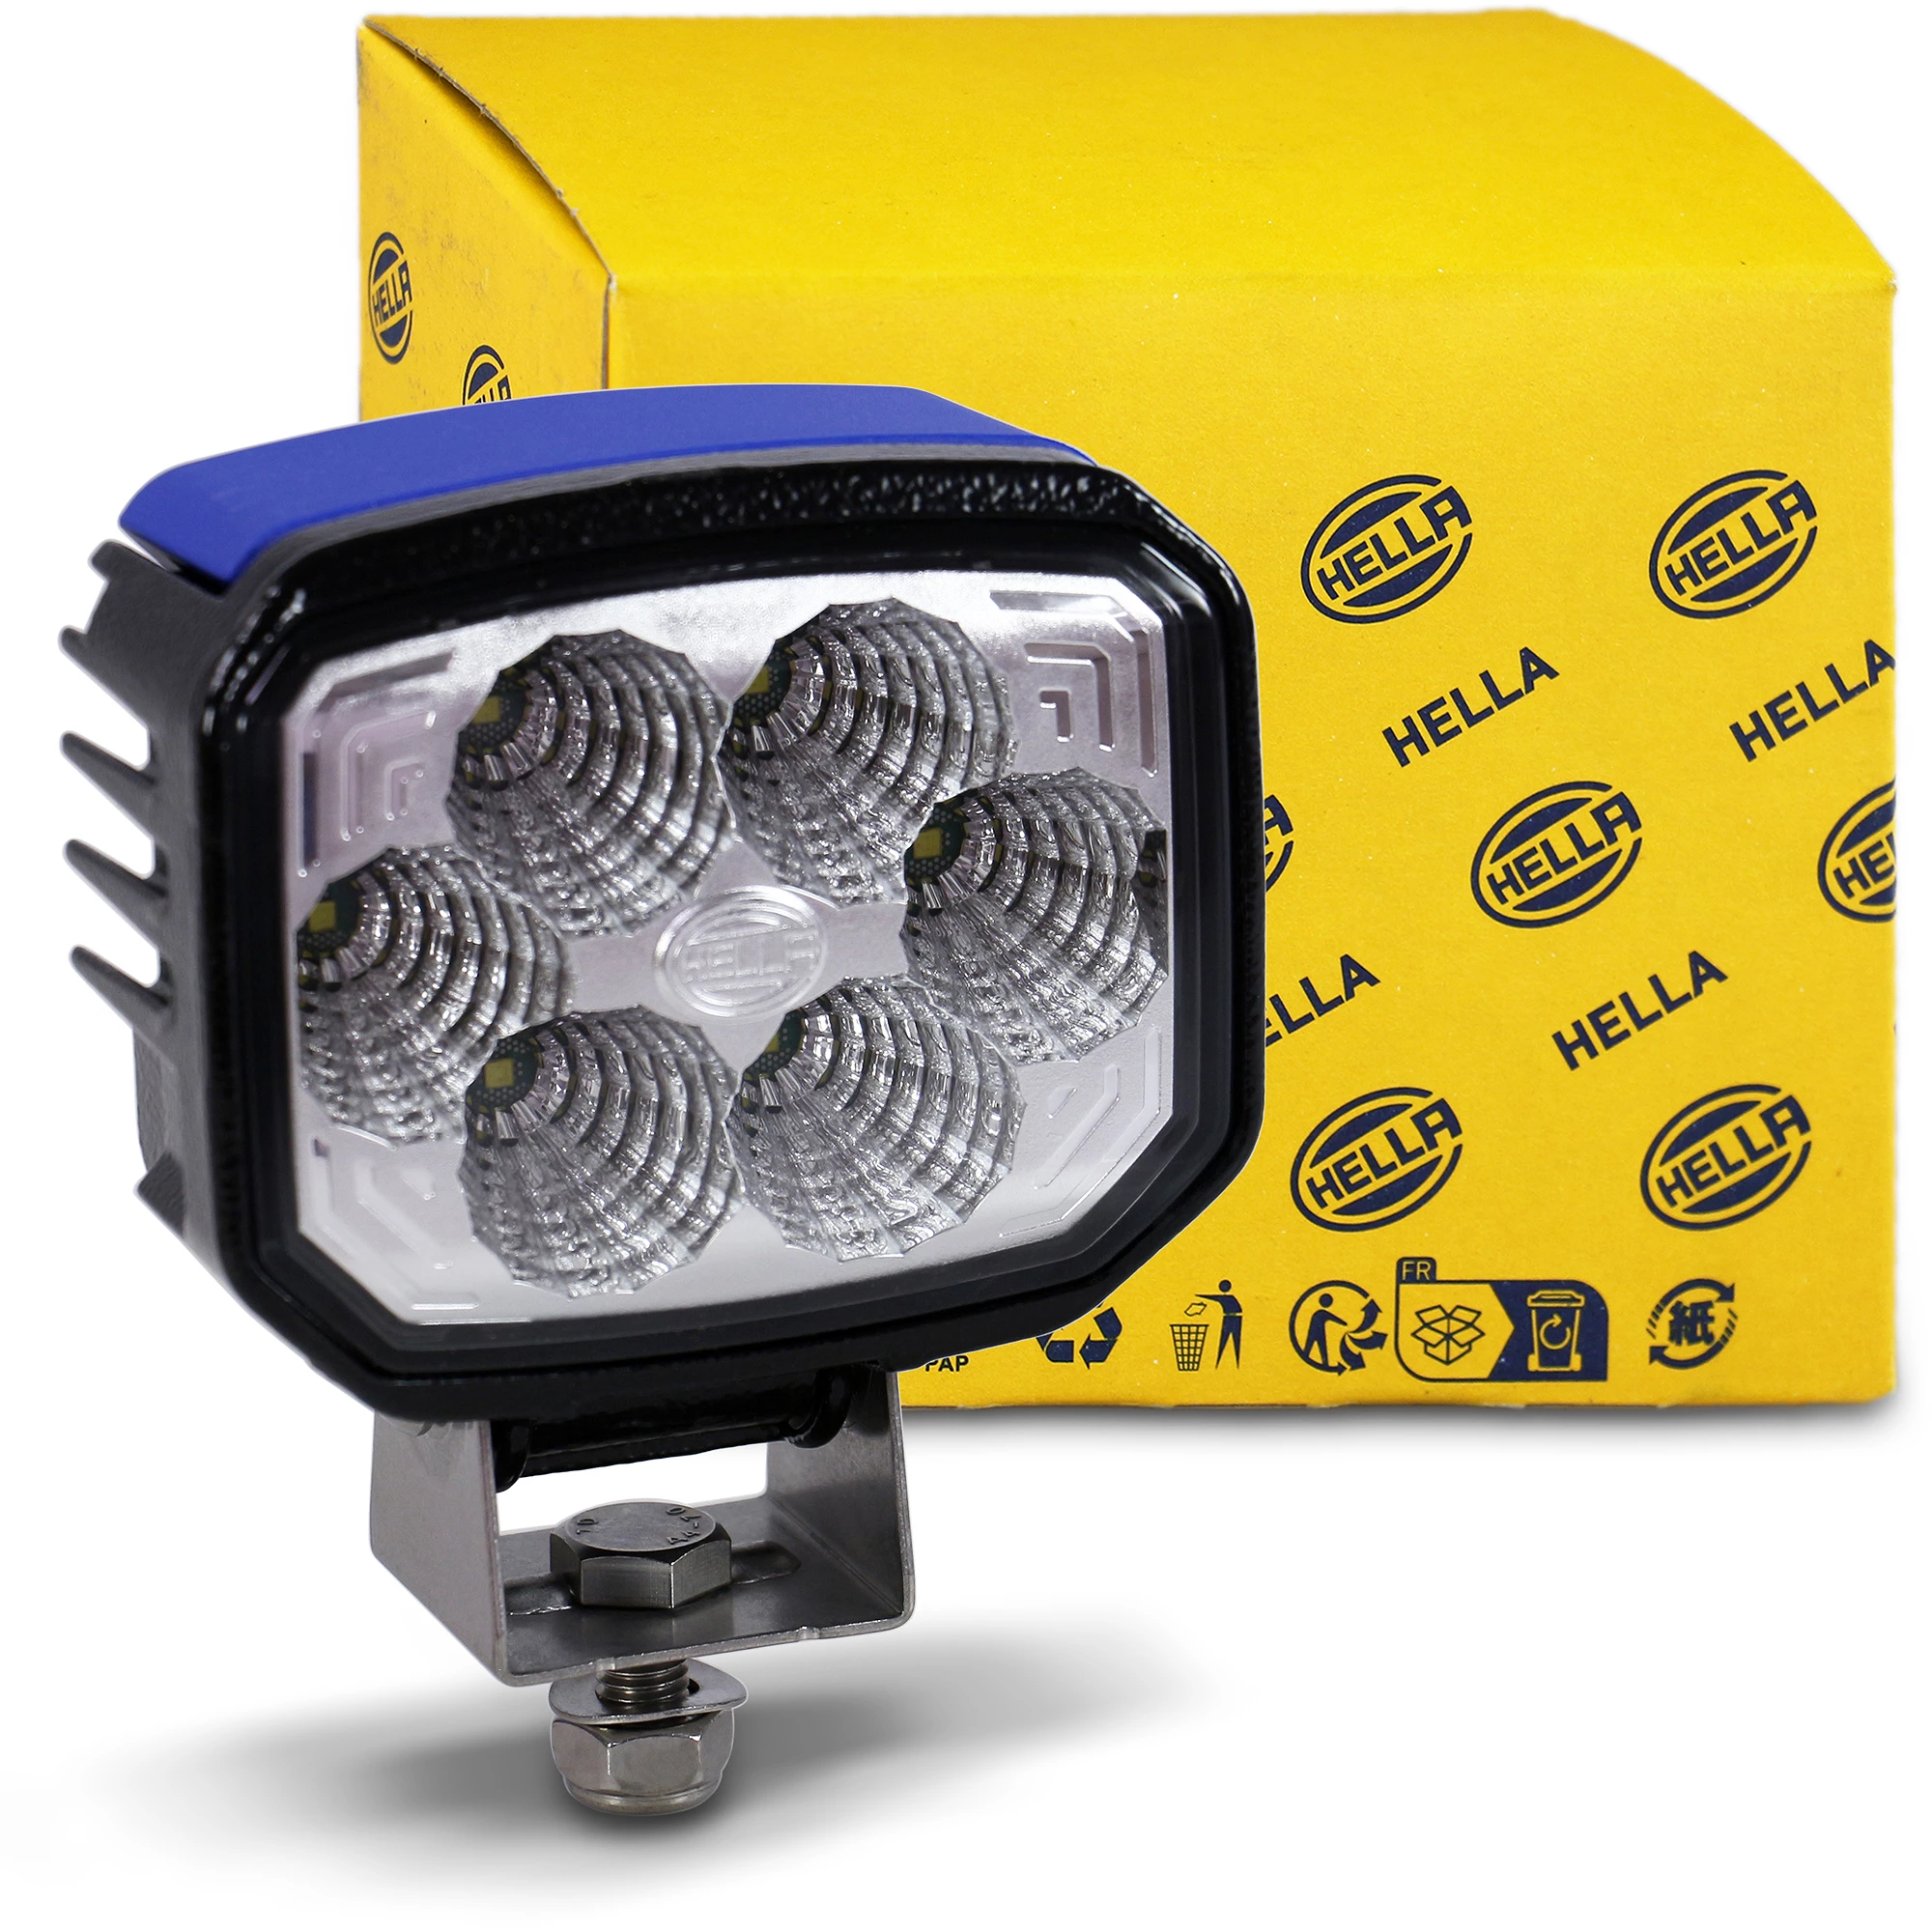 HELLA 1GA 996 188-001 LED-Arbeitsscheinwerfer - Power Beam 1000 - 24/12V -  LKW Ersatzteile beim Experten bestellen